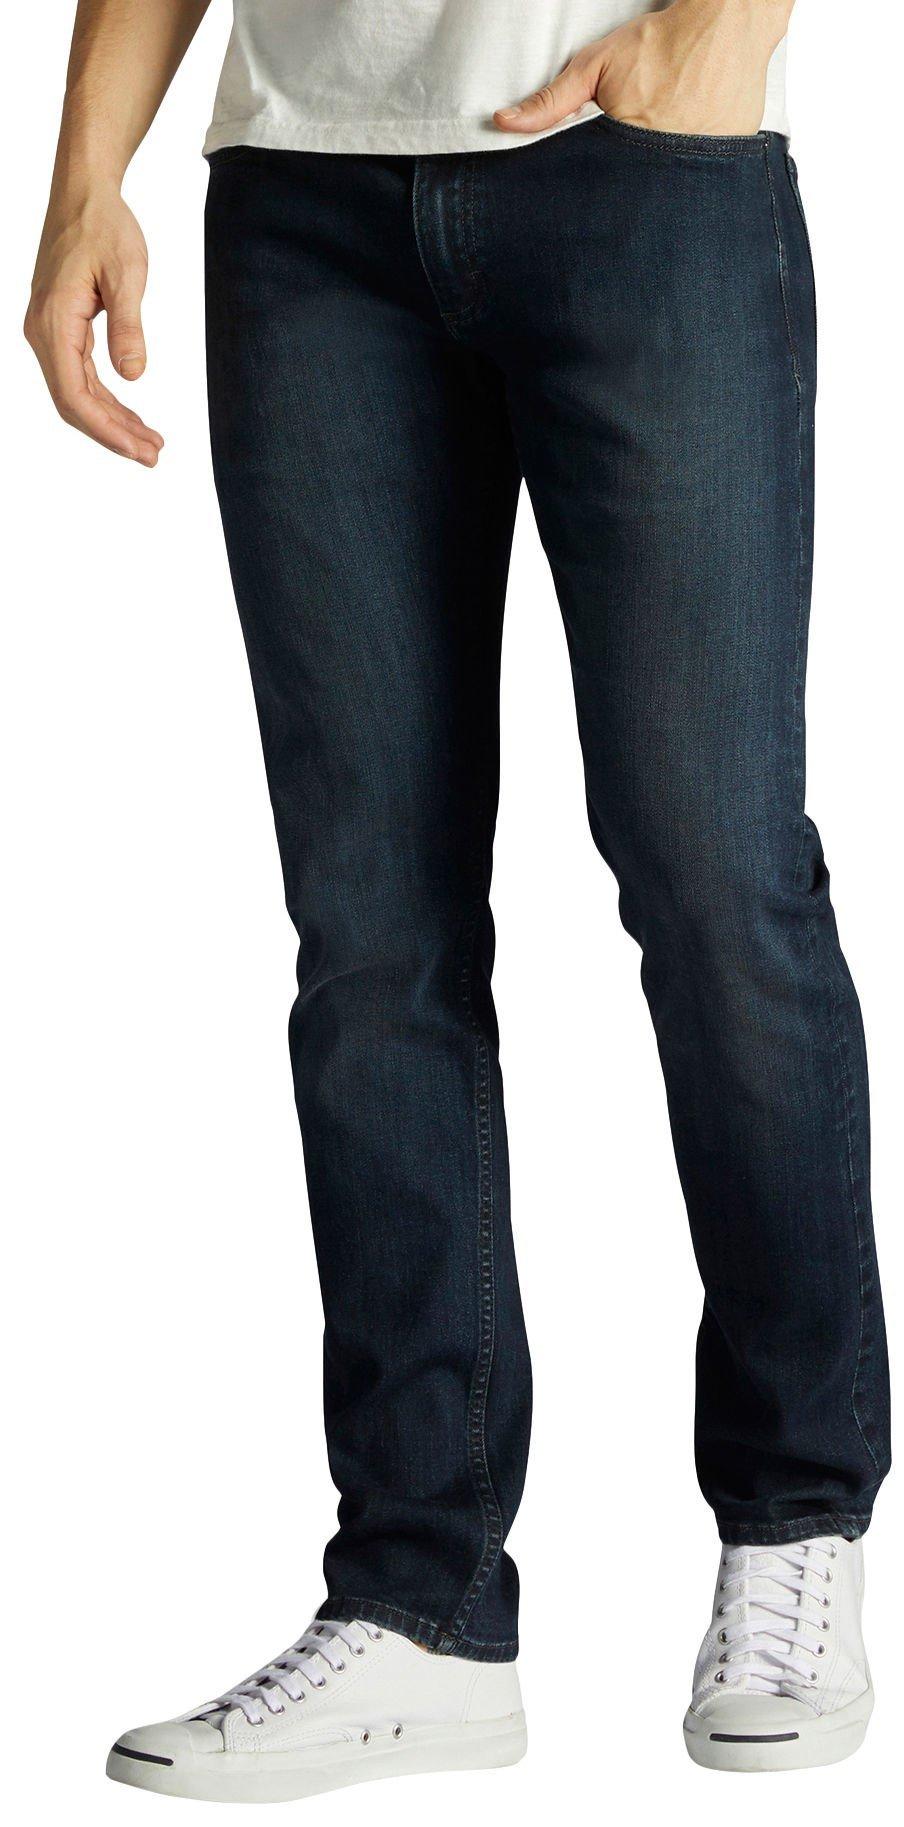 lee modern series slim tapered jeans